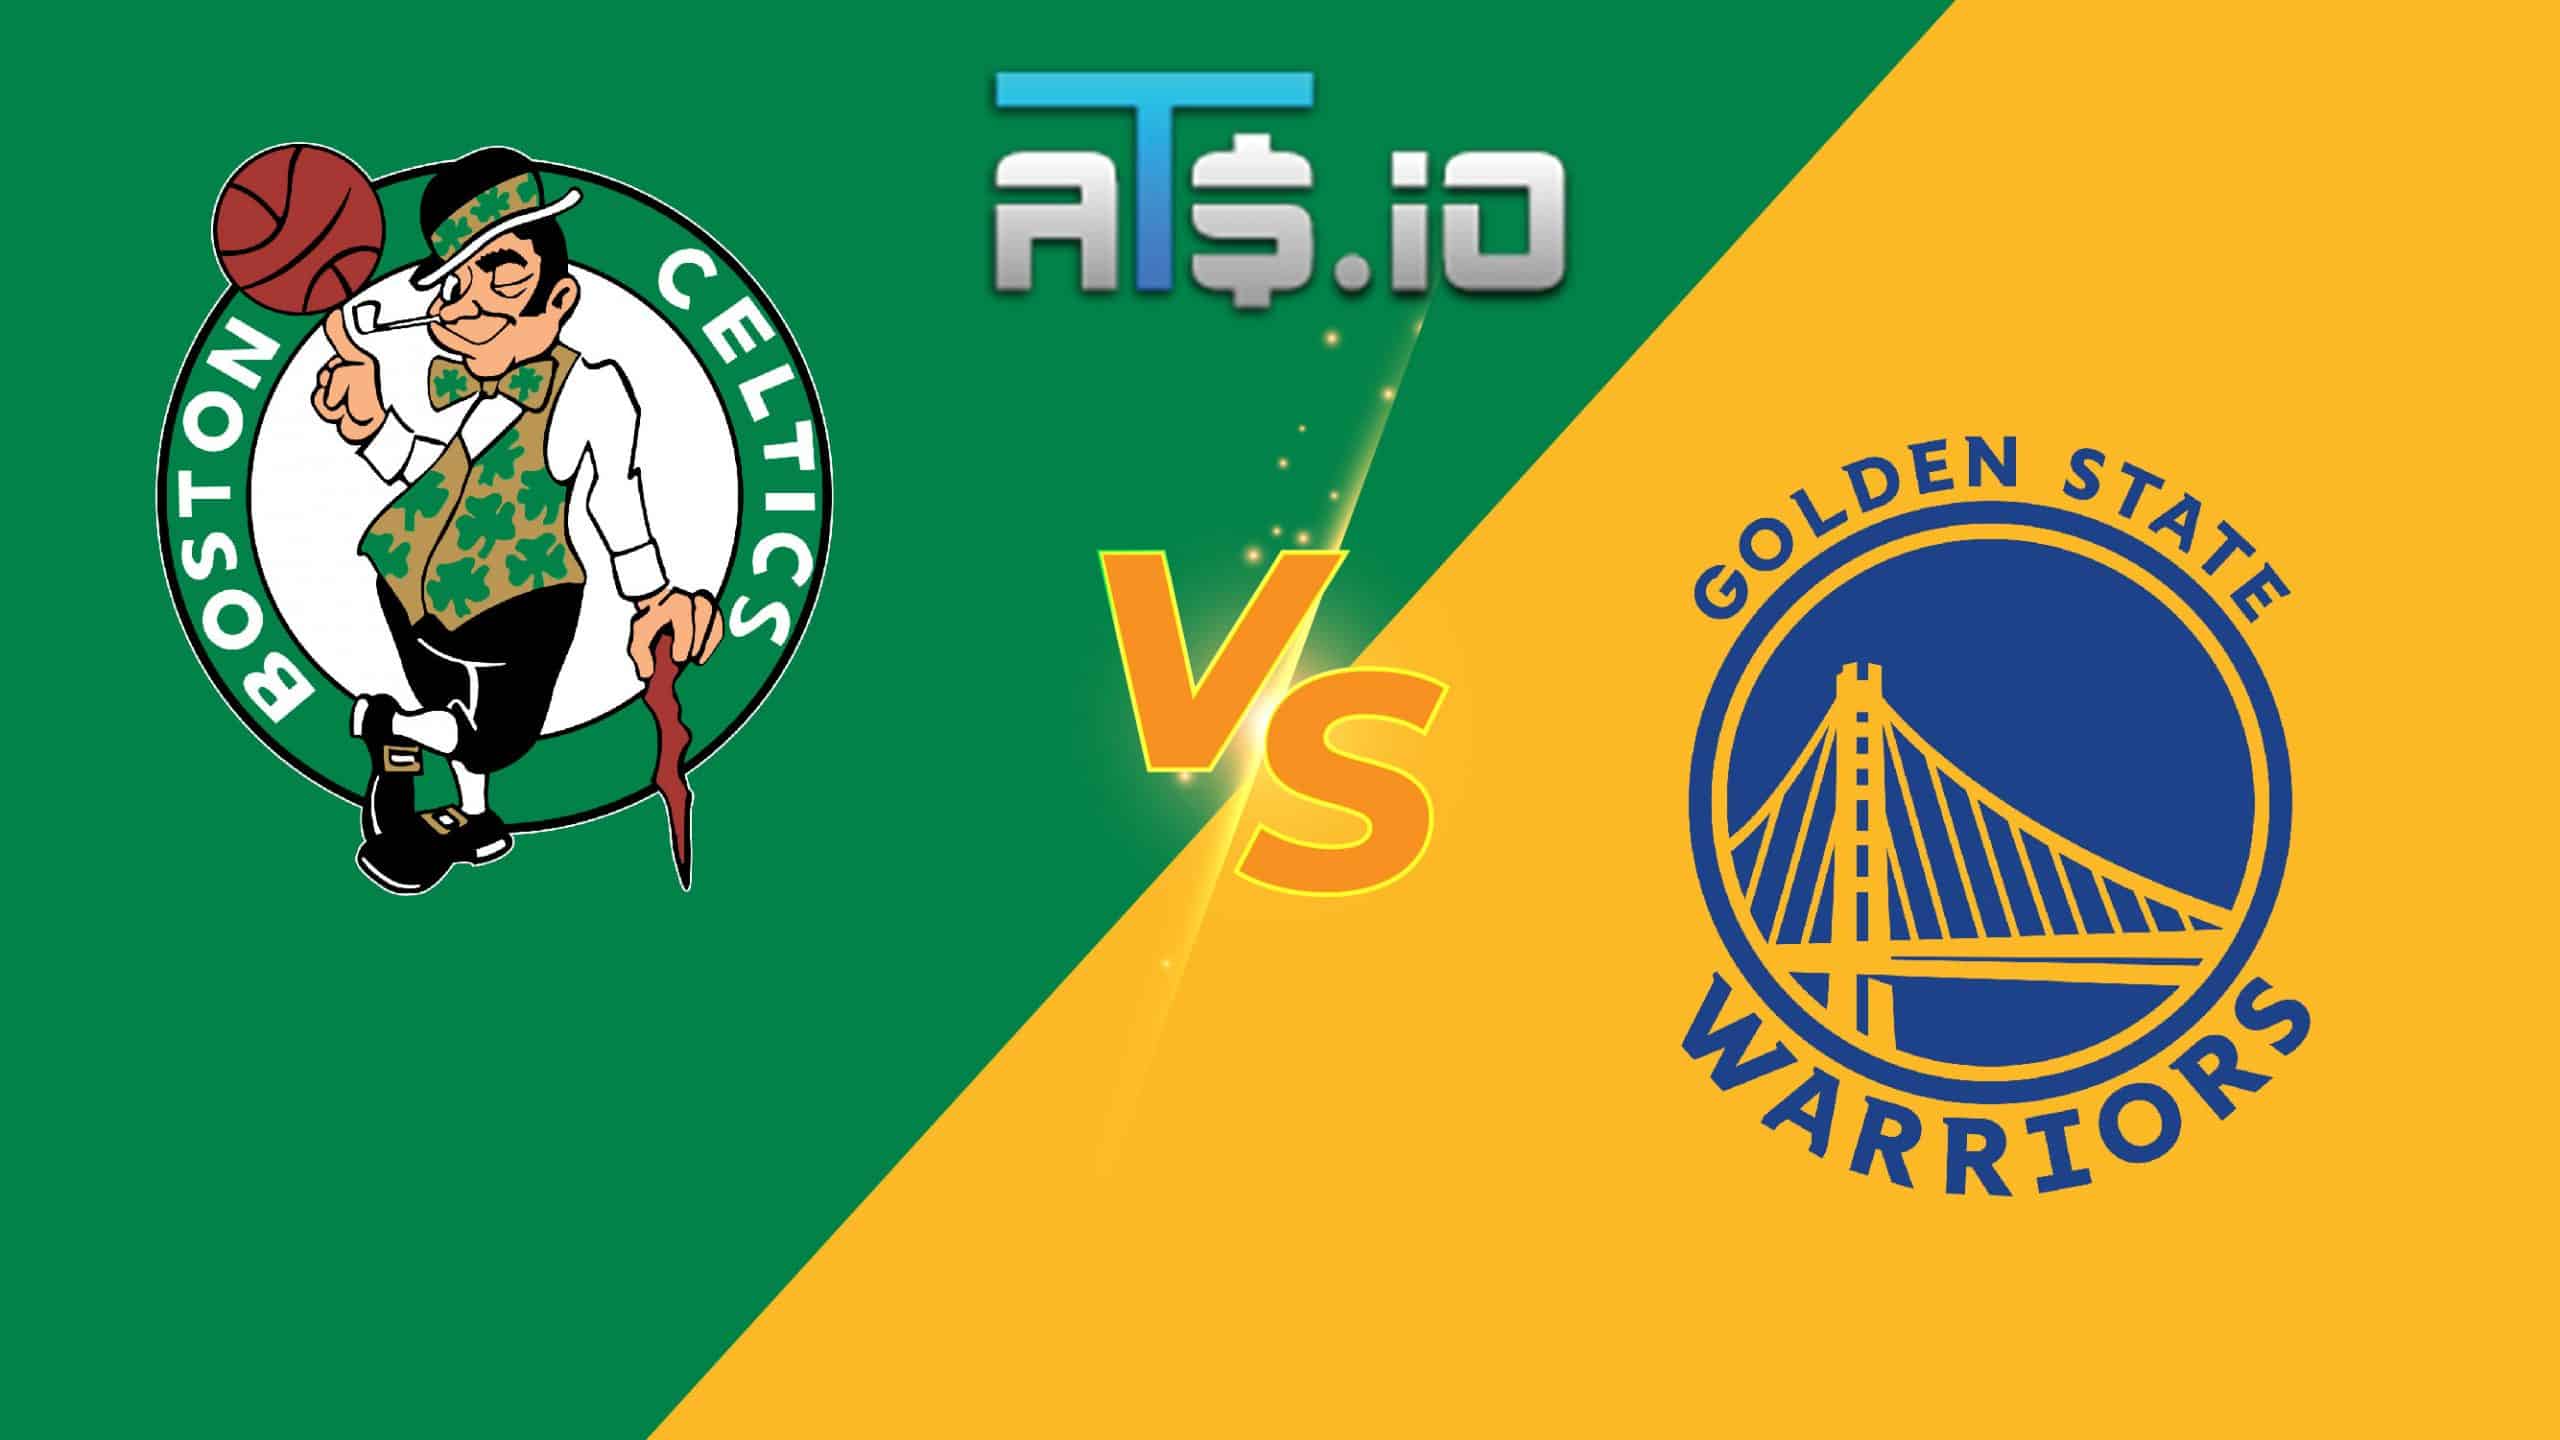 Boston Celtics vs Golden State Warriors NBA Finals Game 5 Pick 6/13/22